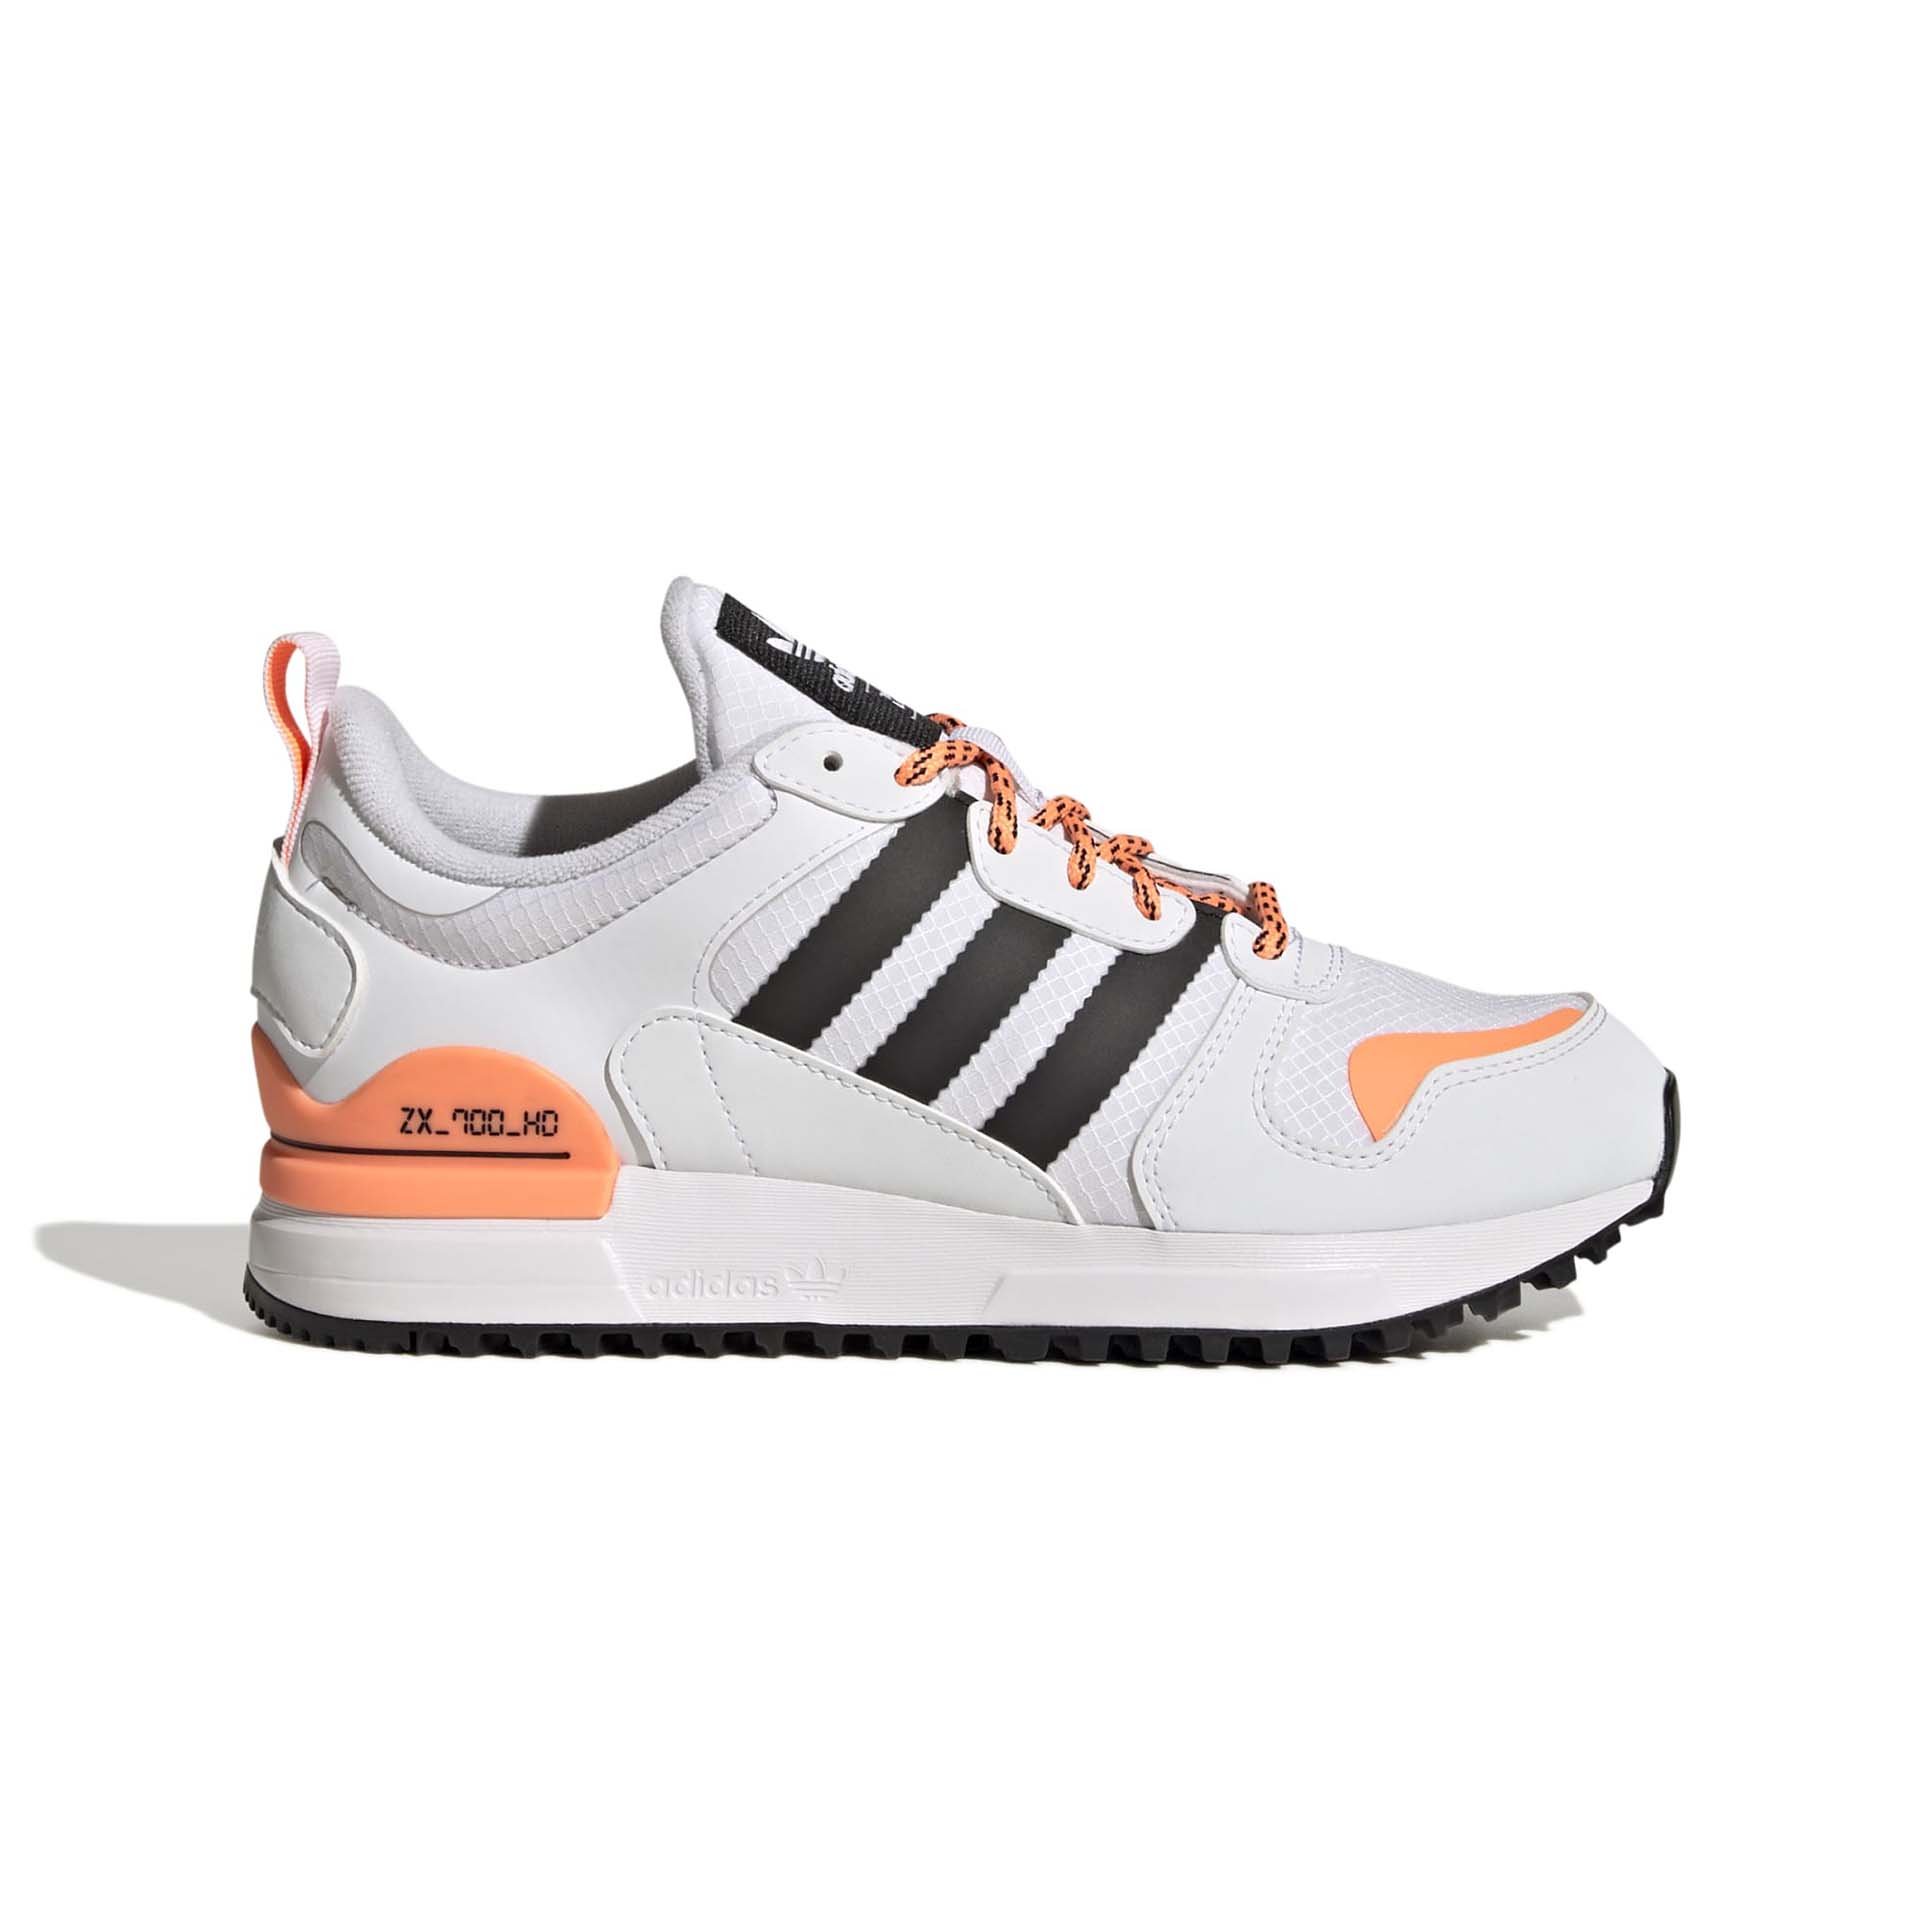 Adidas ZX 700 HD J Sneakers Footwear White/Core Black/Orange